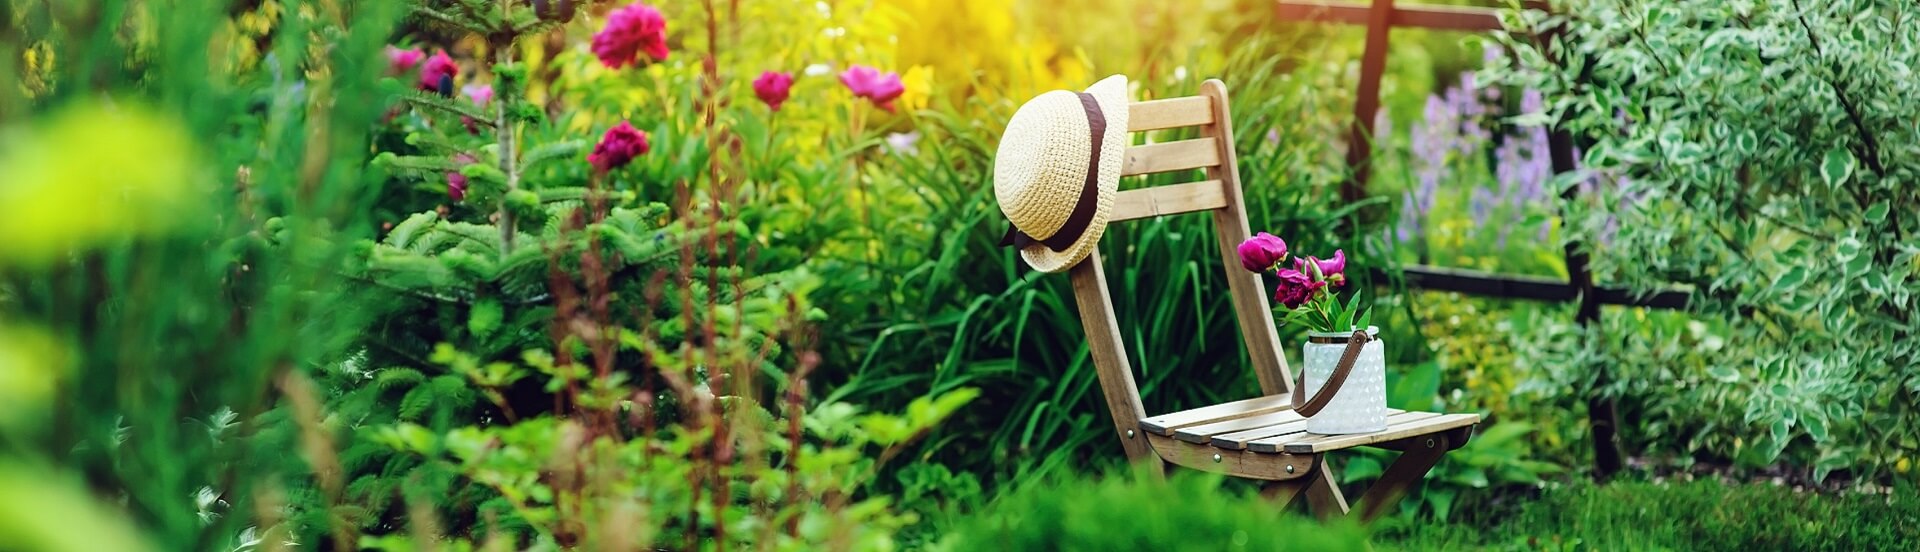 Sie gehören zu einem Sommerabend auf Balkon und Terrasse dazu: bequeme Gartenstühle, in denen man gerne den Tag ausklingen lässt oder mit Freunden an der langen Tafel zusammensitzt.